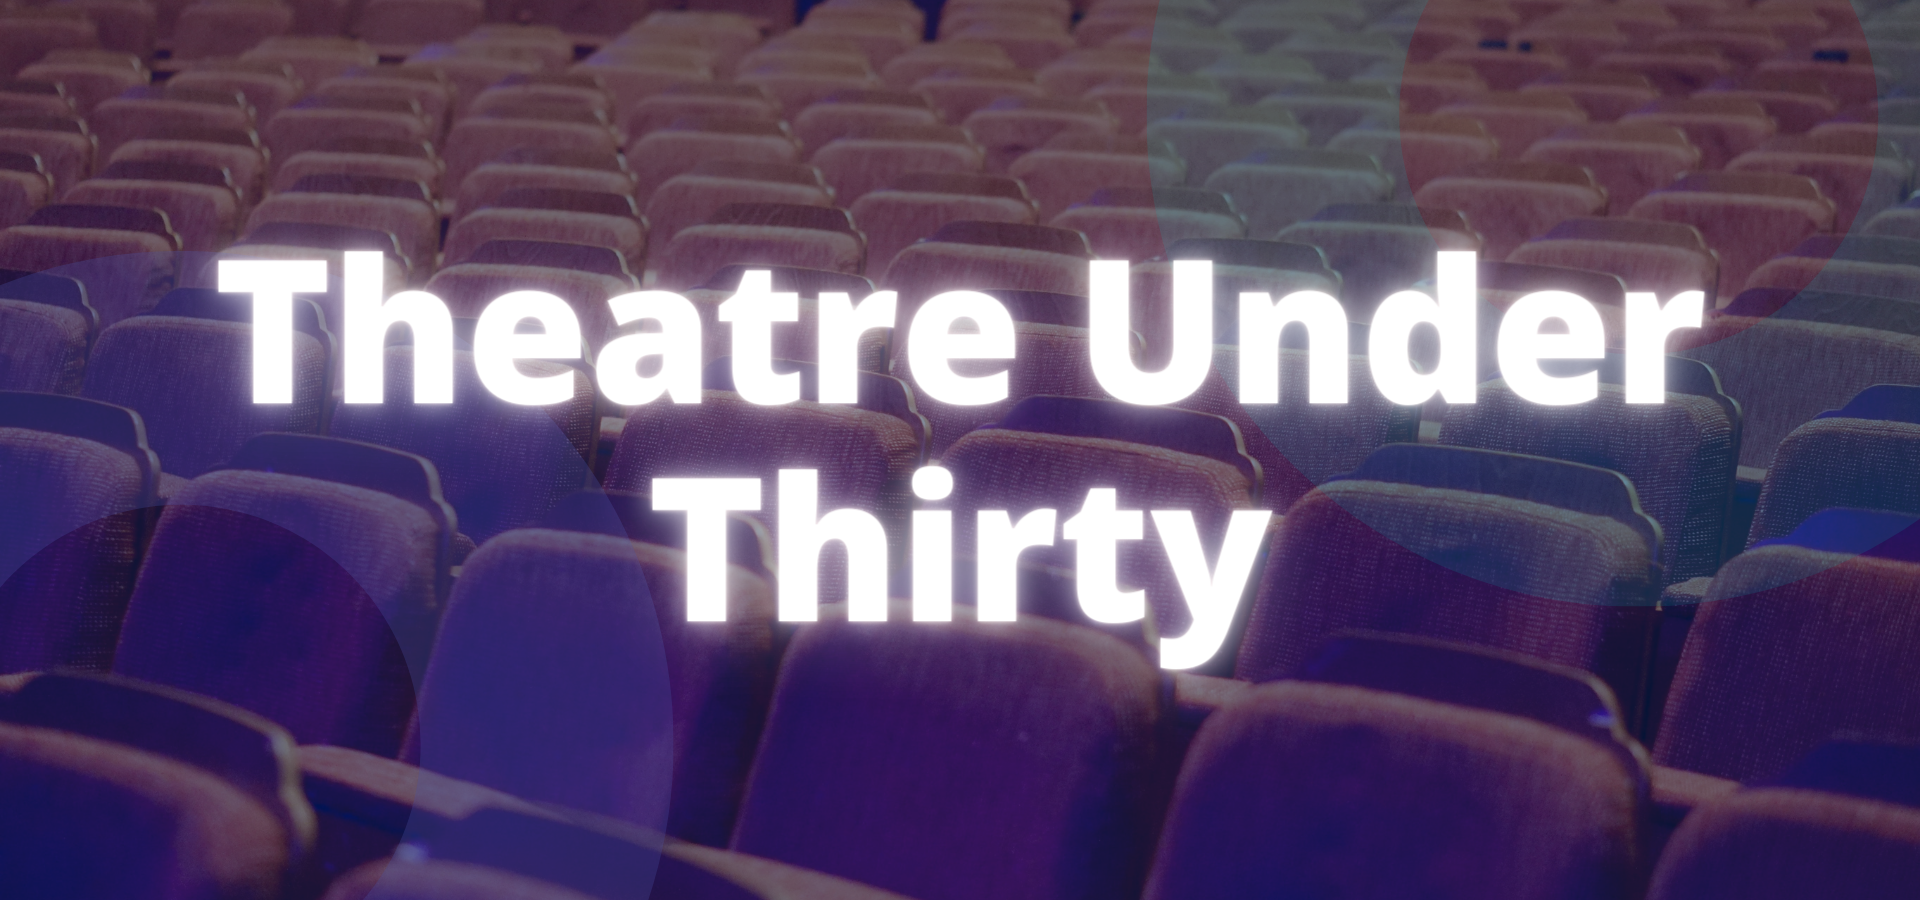 Theatre Under 30 